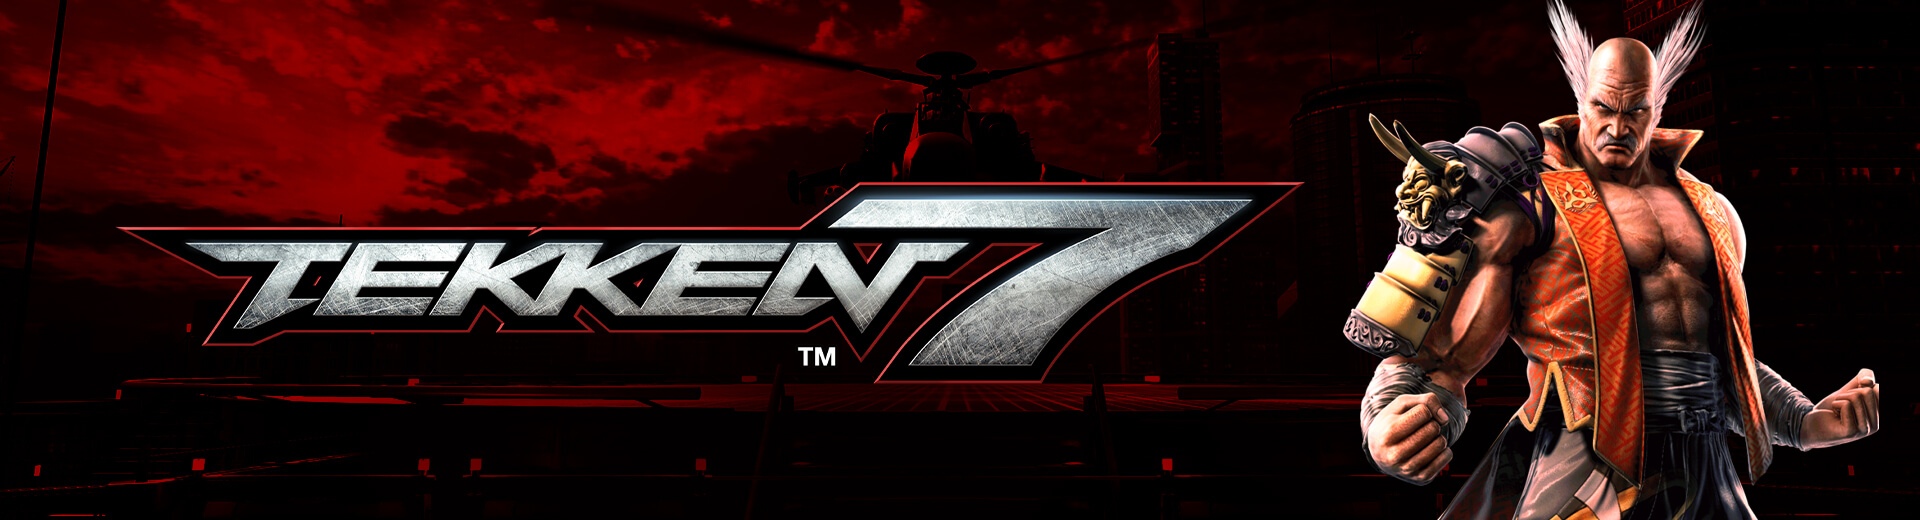 Tekken 7 @ The Cave #1